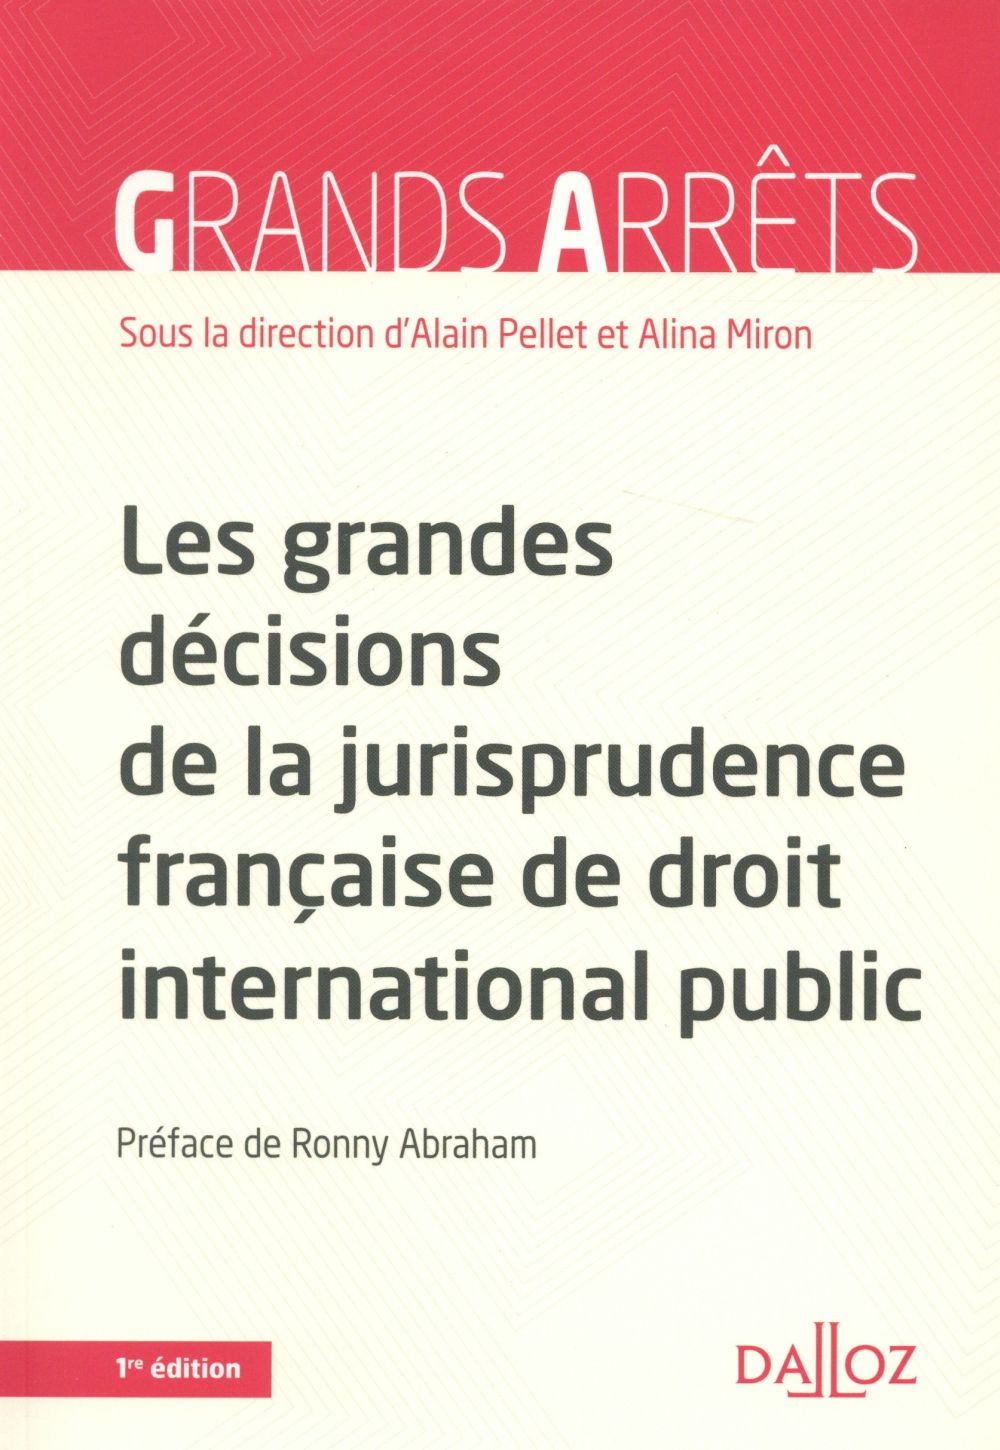 LES GRANDES DECISIONS DE LA JURISPRUDENCE FRANCAISE DE DROIT INTERNATIONL PUBLIC